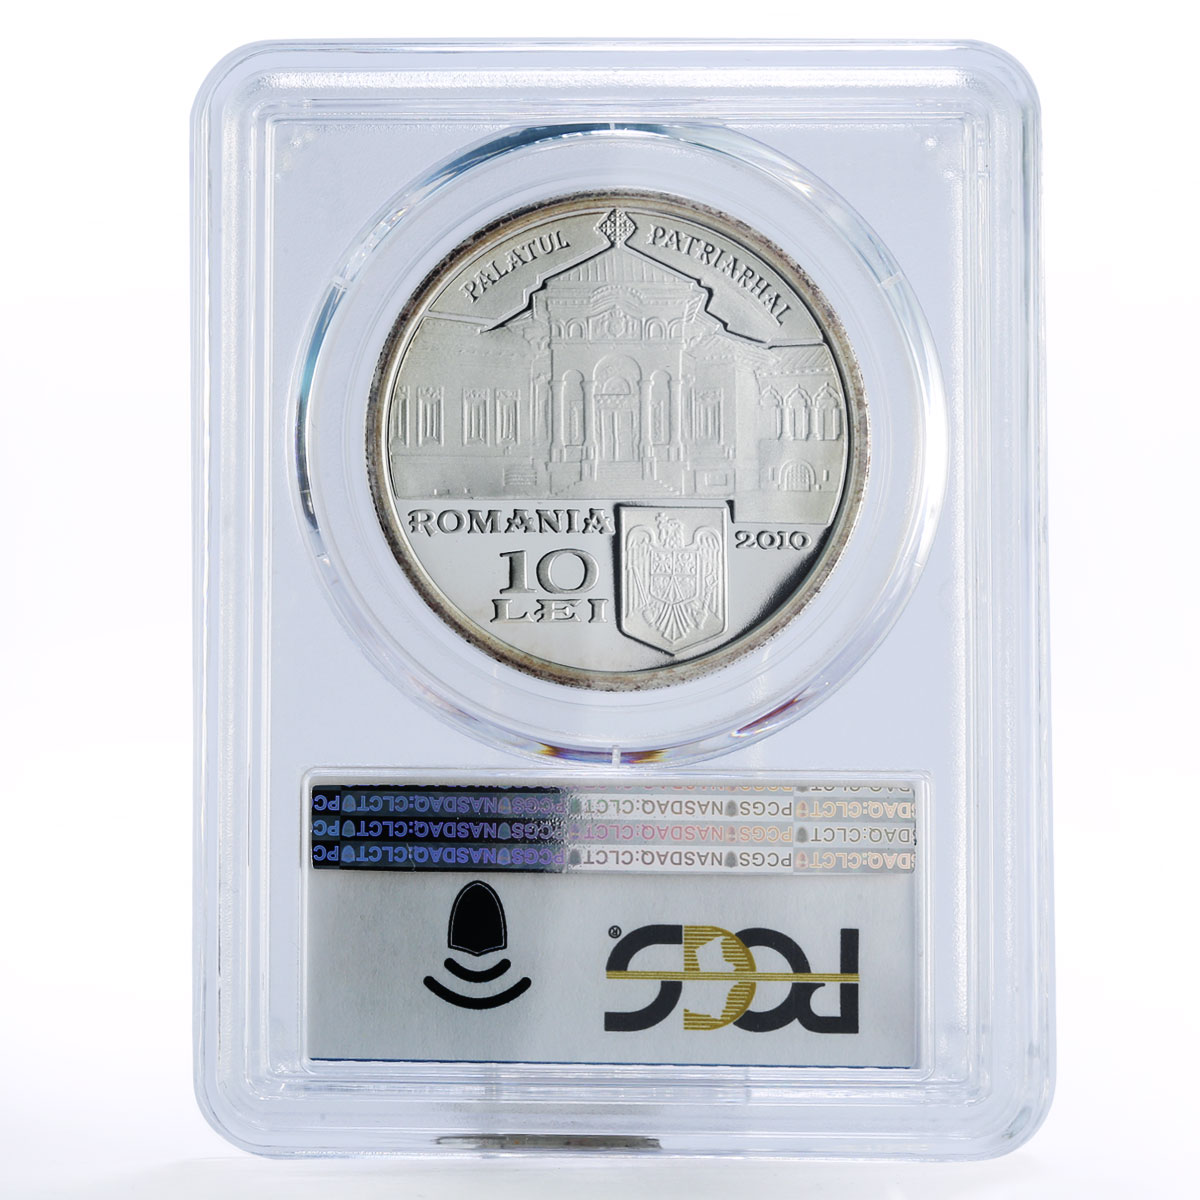 Romania 10 lei Romanian Orthodox Nicodim Munteanu PR69 PCGS silver coin 2010